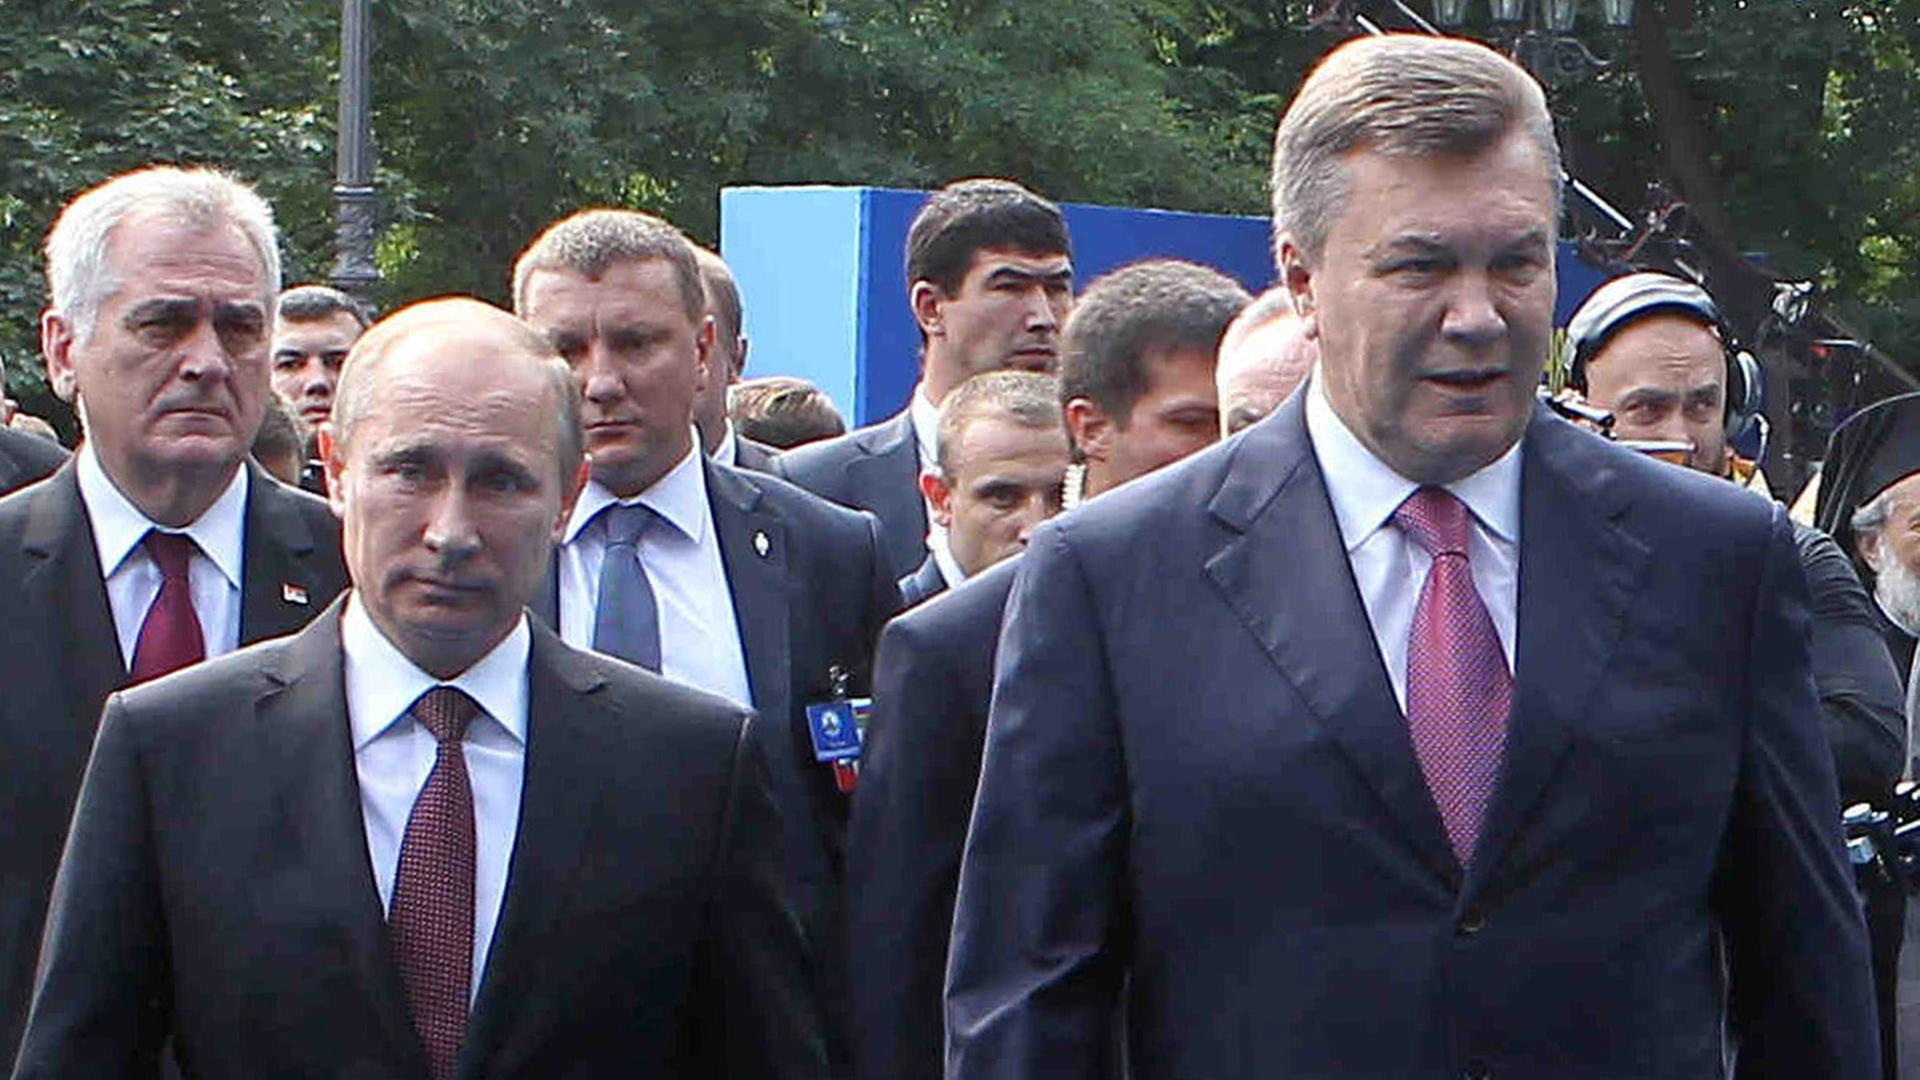 Der russische Präsident Wladimir Putin (li) zusammen mit dem urkainischen Präsidenten Viktor Yanukovich (re)